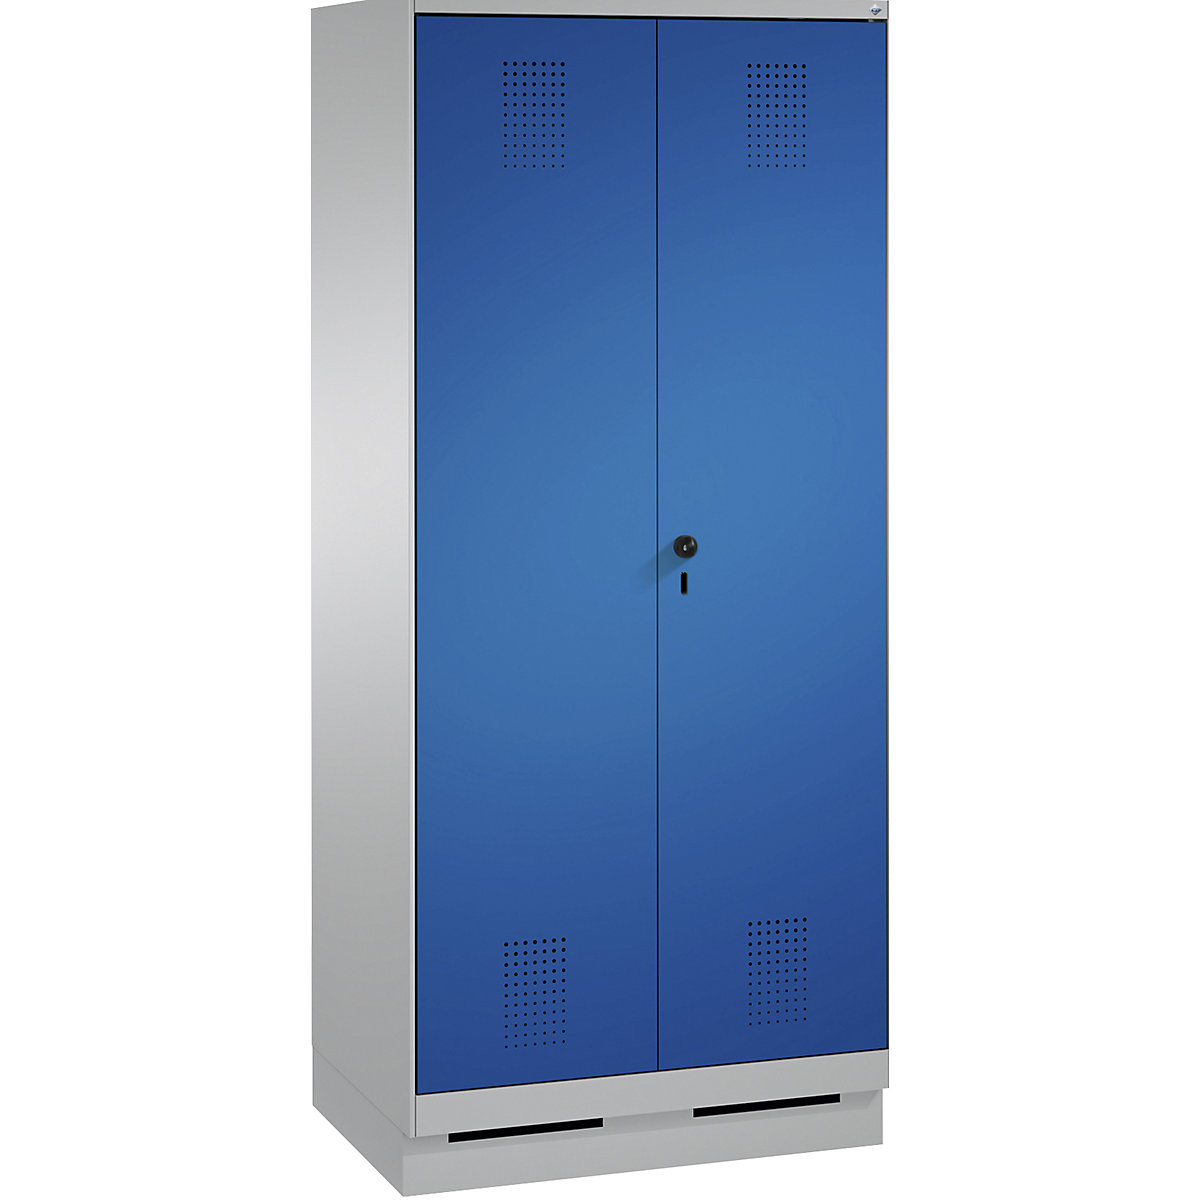 Garderobna omara EVOLO, dvokrilna vrata – C+P, 2 razdelka, širina razdelka 400 mm, s podnožjem, bela aluminijasta / encijan modra-5